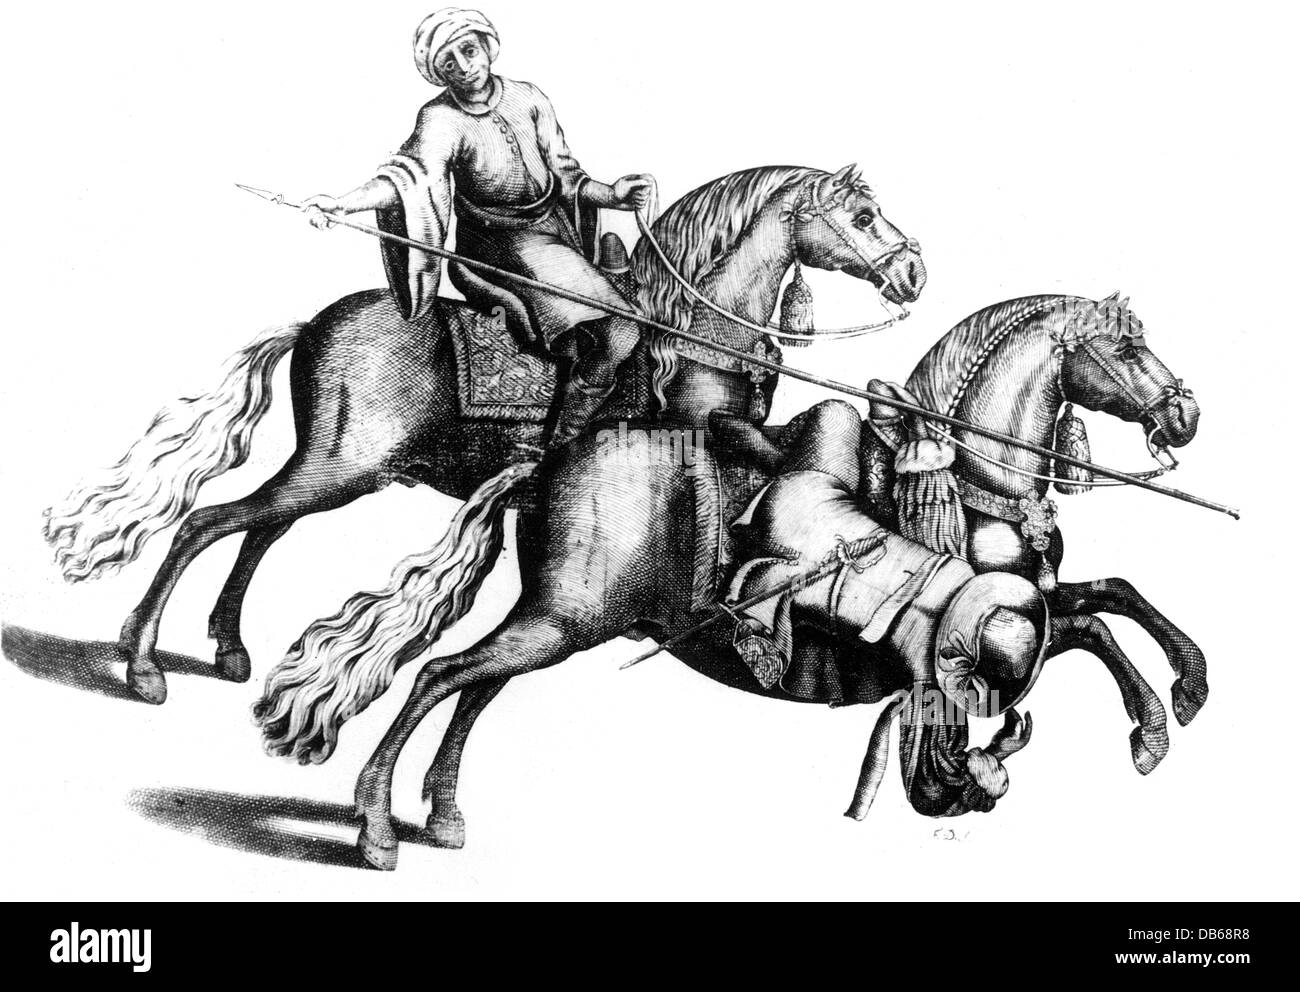 Militari, cavalleria, di abilità a cavallo e cavaliere evitando una lancia di spinta, incisione su rame, da 'arte da Cavalleria', da Antonio Galvão, Lisboa 1678, artista del diritto d'autore non deve essere cancellata Foto Stock